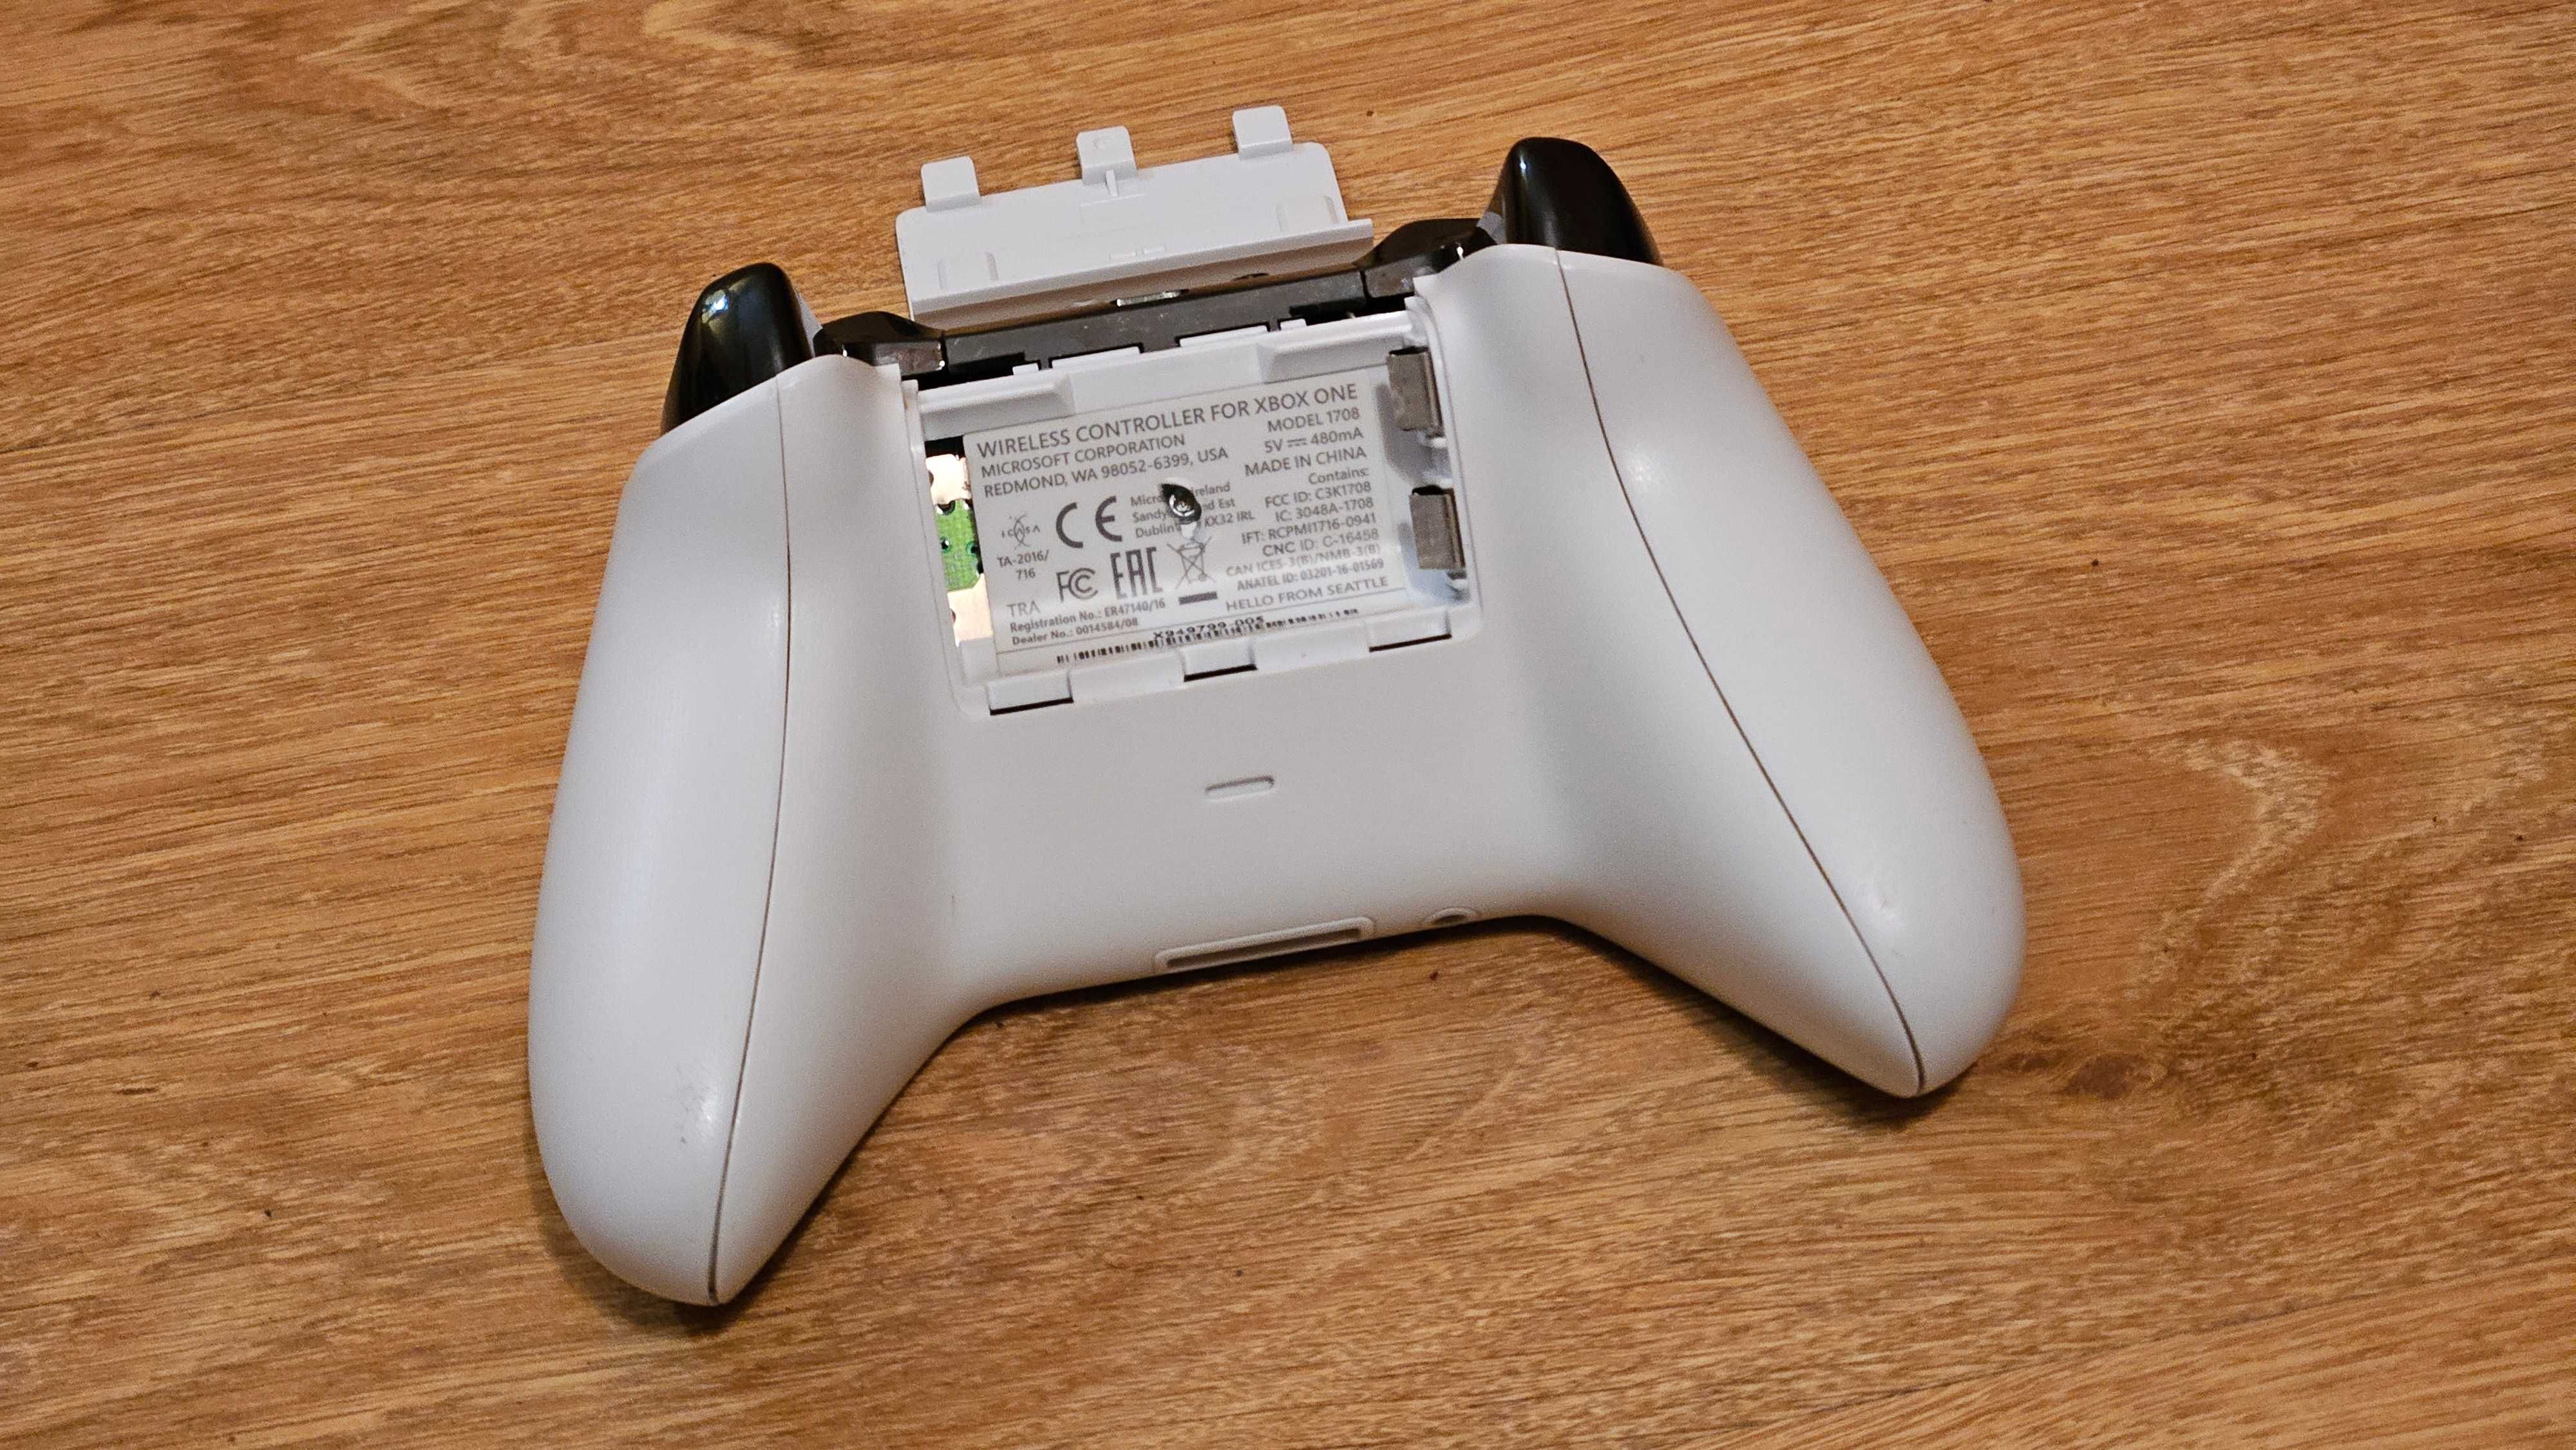 Bezprzewodowy oryginalny kontroler gamepad do Xbox biały